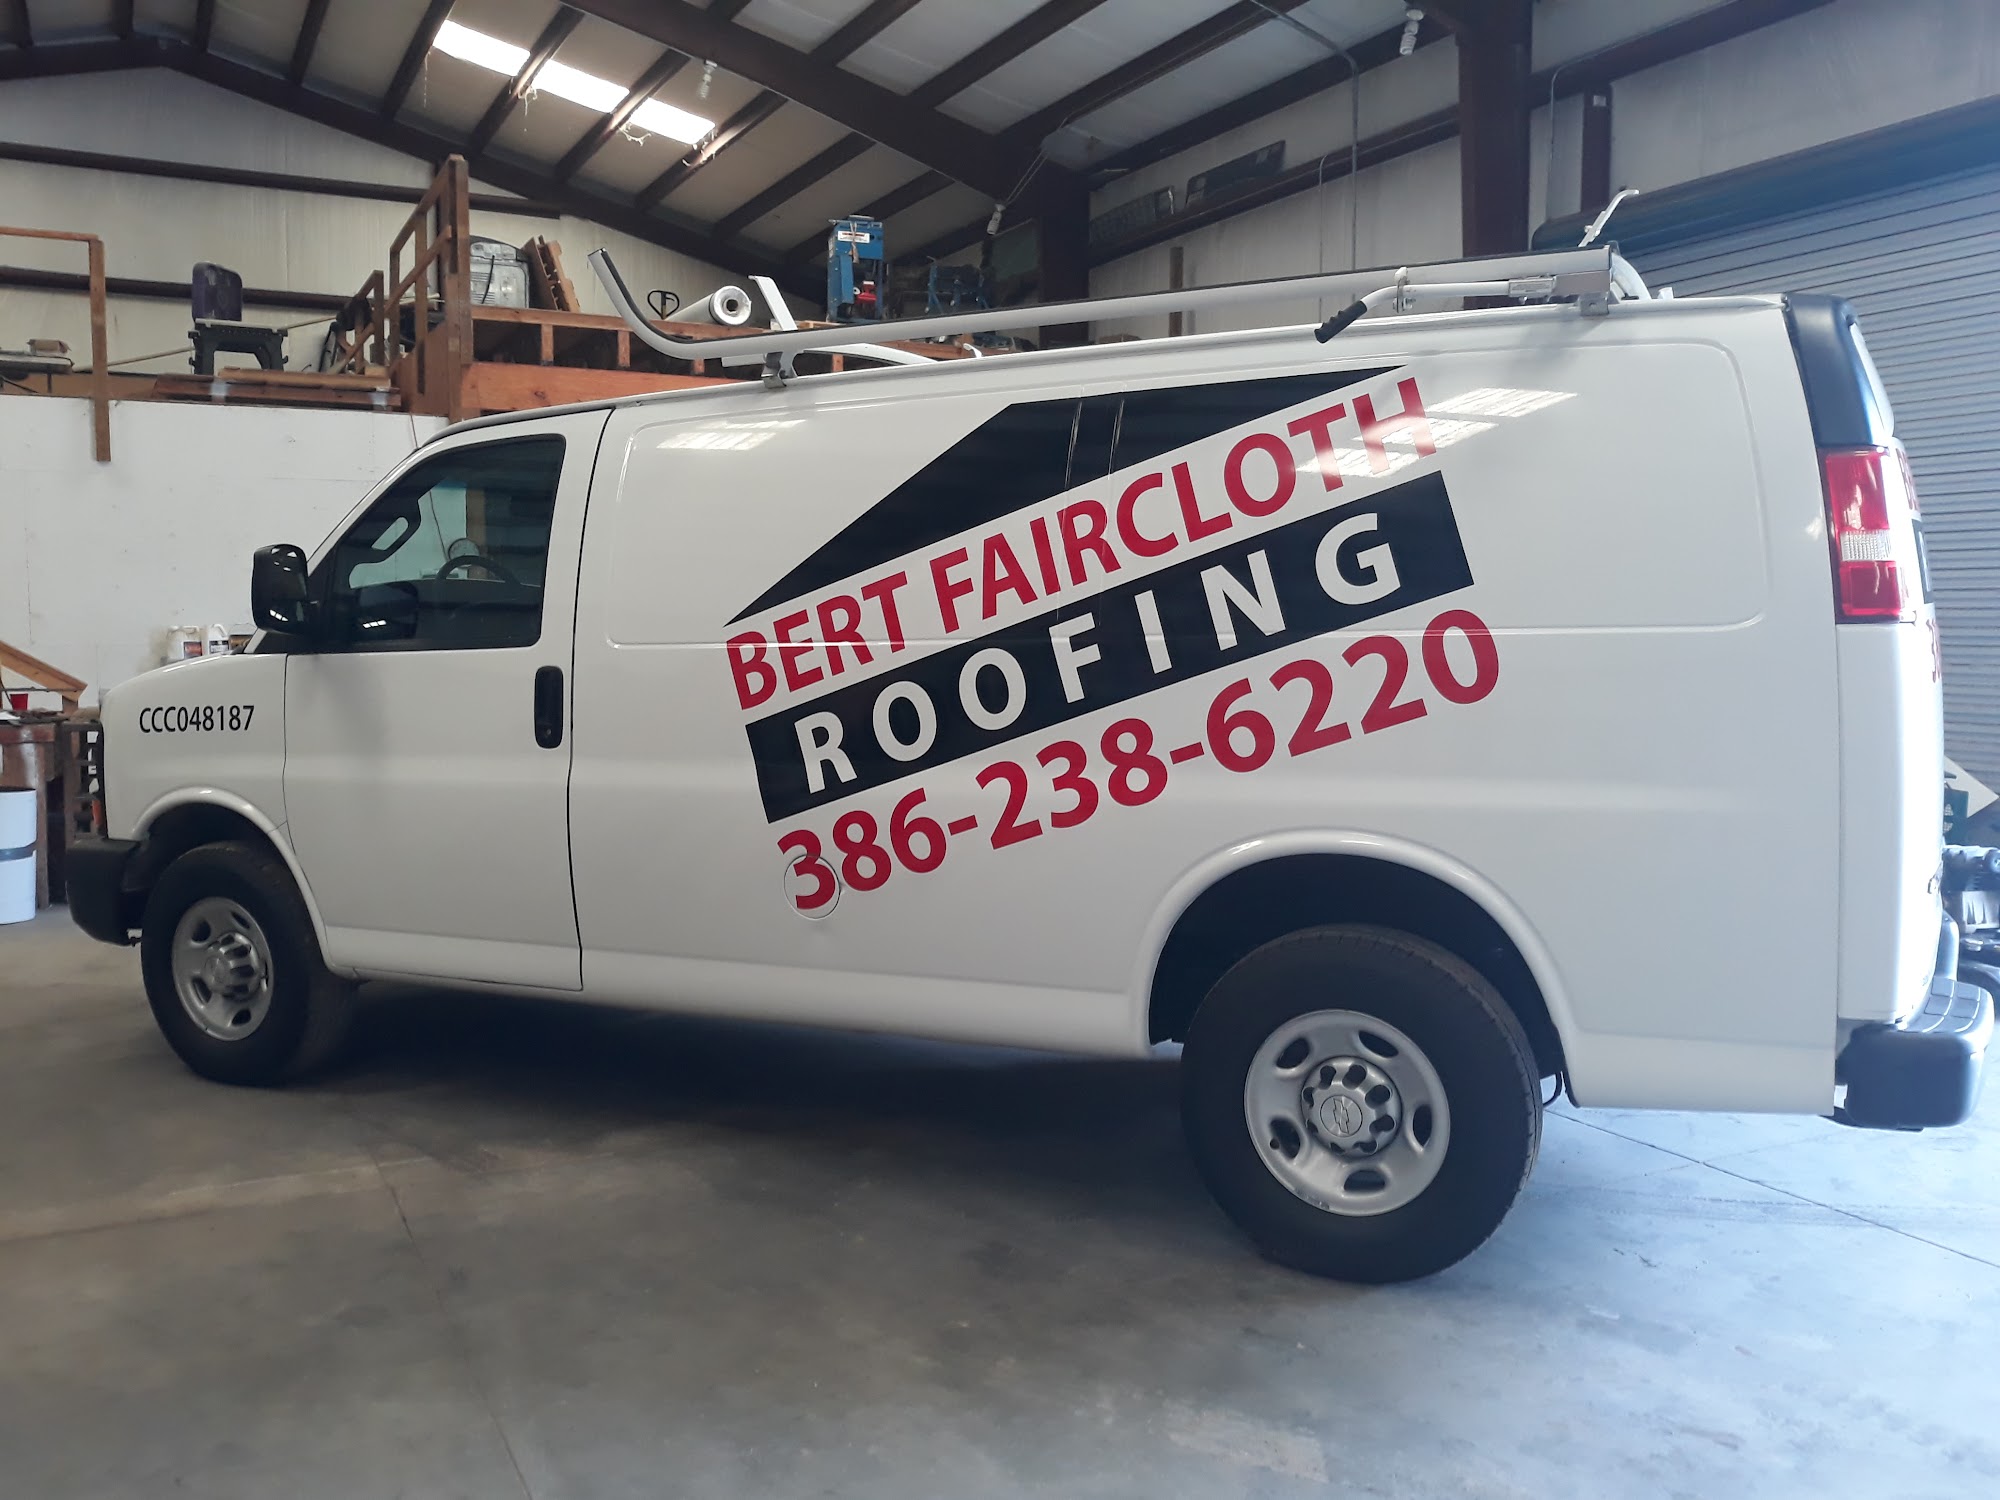 Bert Faircloth Roofing Inc